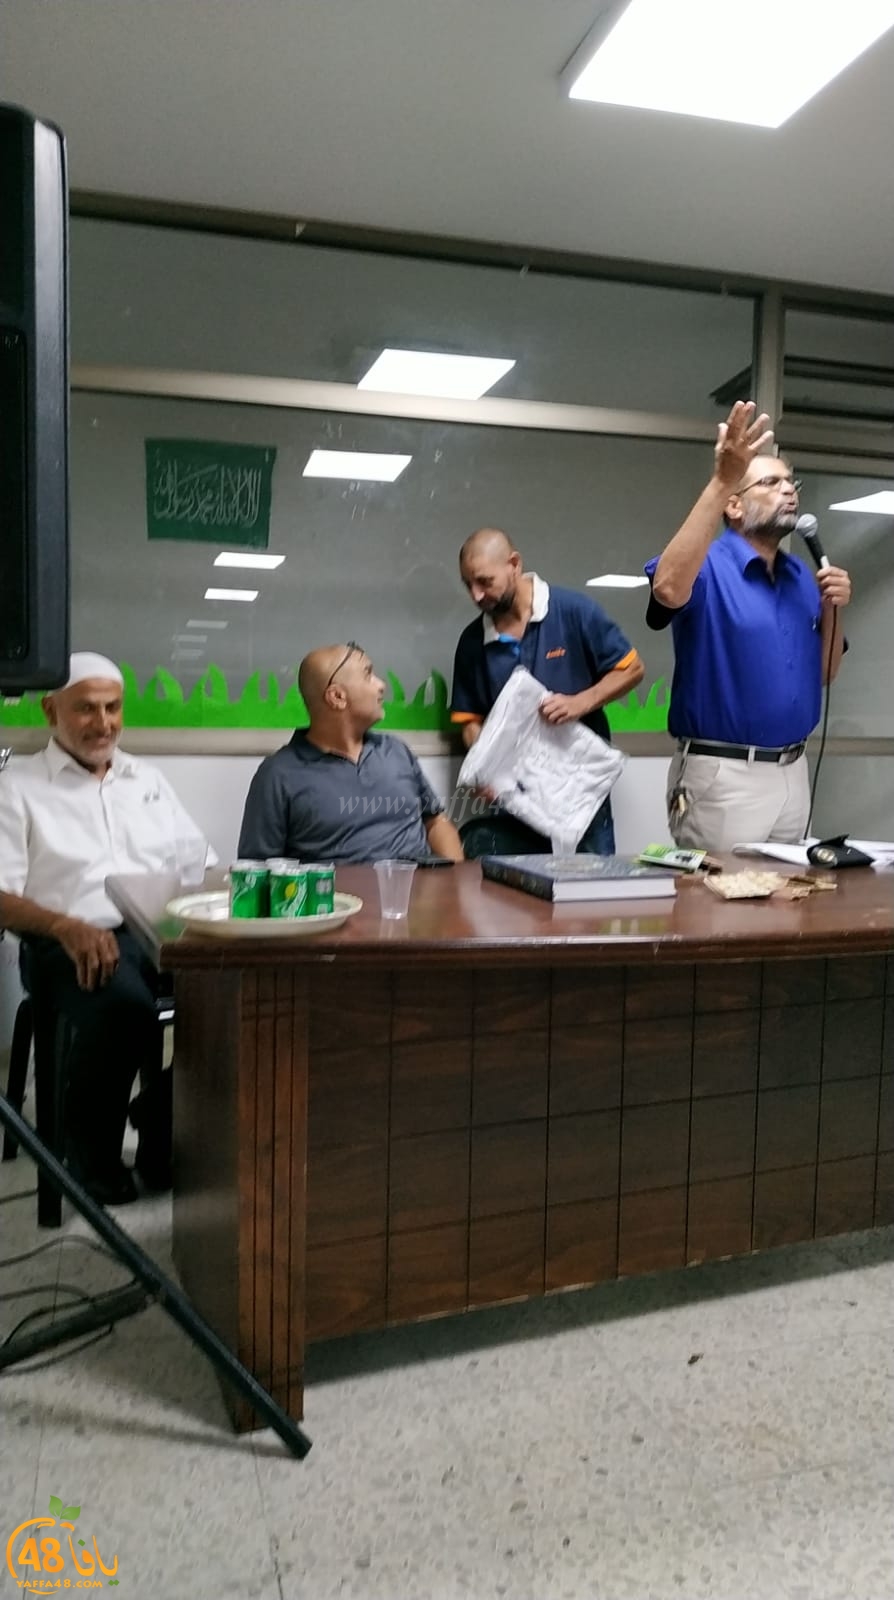  بالصور: لجنة الحج والعمرة بيافا تُنظم احتفالاً لتوديع حجاج بيت الله الحرام